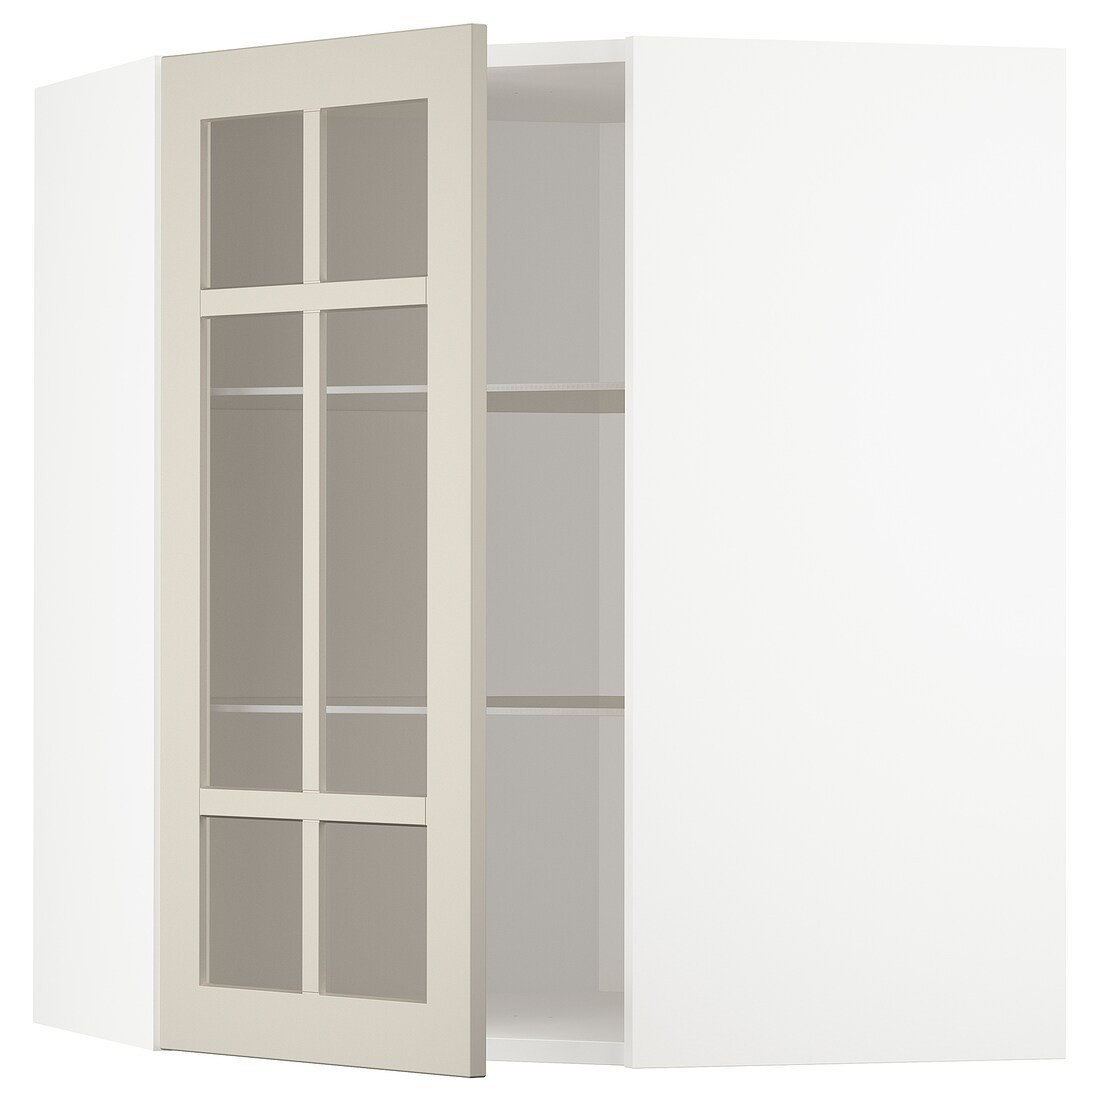 METOD МЕТОД Угловой настенный шкаф с полками / стеклянная дверь, белый / Stensund бежевый, 68x80 см